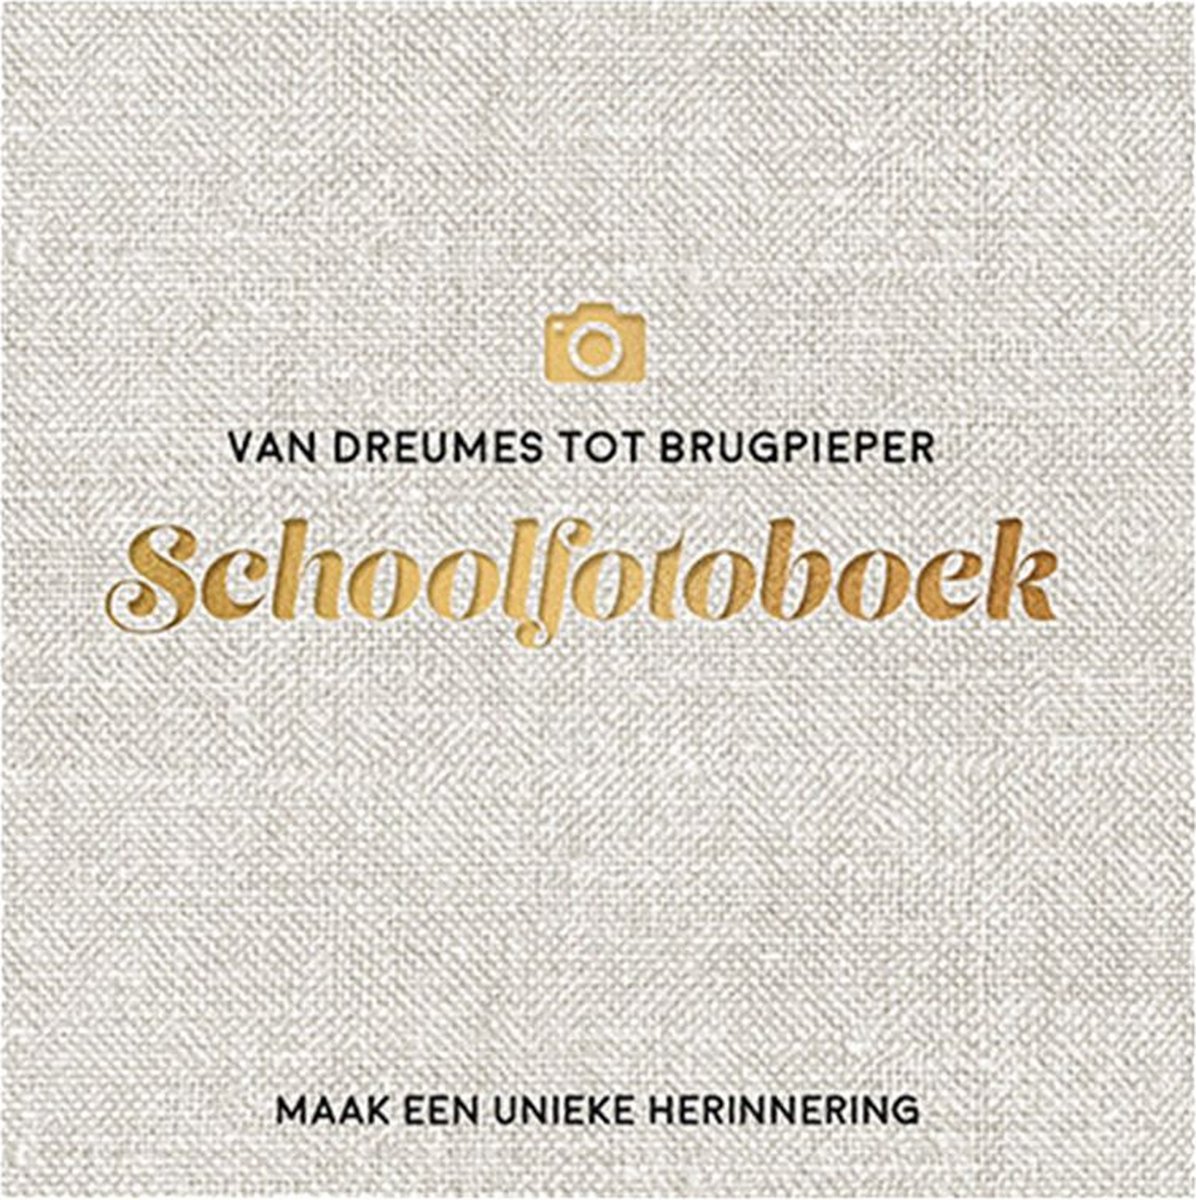 Van dreumes tot brugpieper schoolfotoboek - Boekhuis